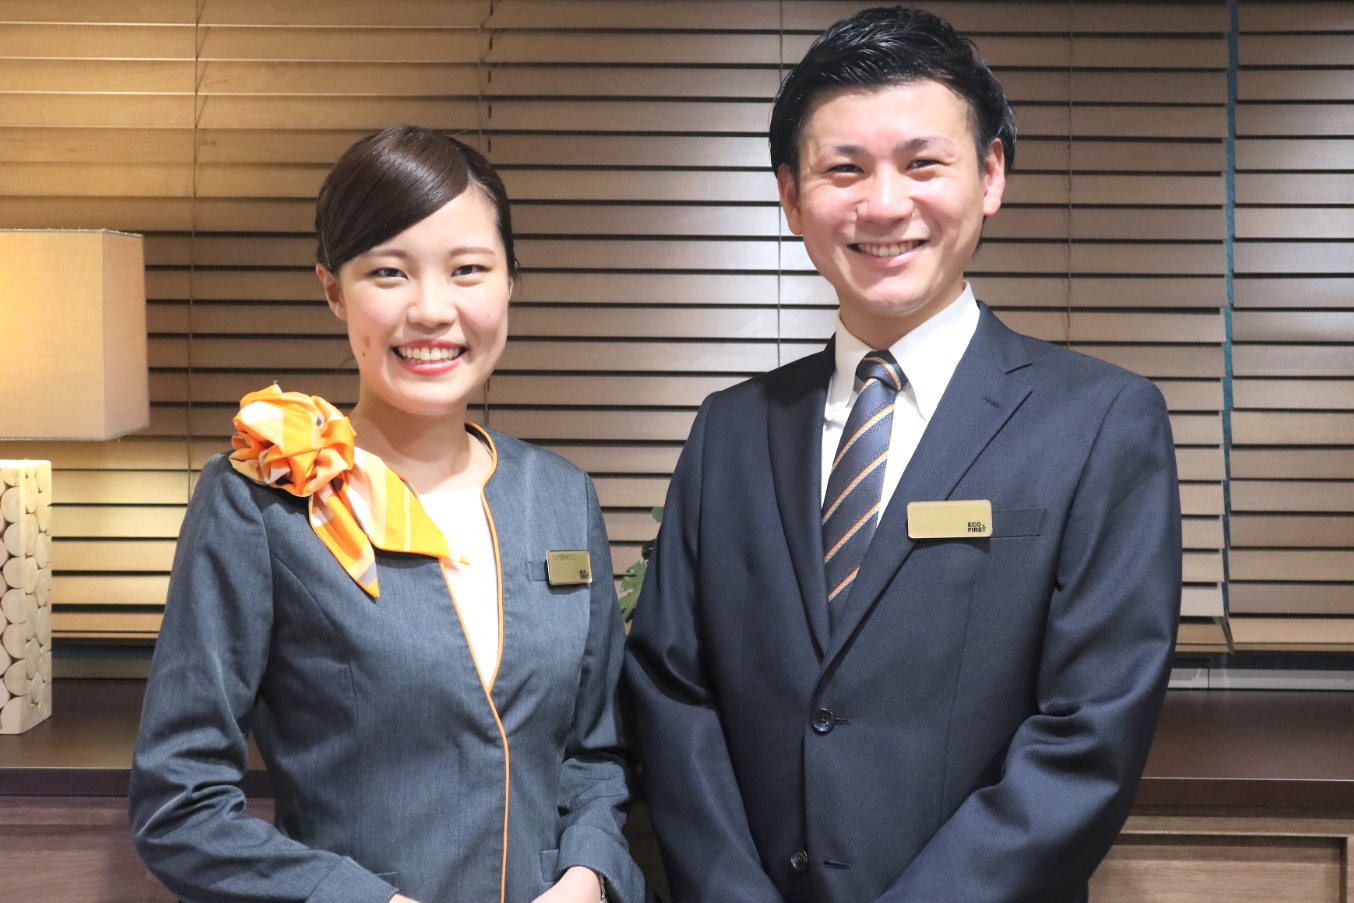 ペアで住込みながら高額収入 スーパーホテルの責任者募集要項 熊本県水俣市 株式会社スーパーホテル 採用サイト